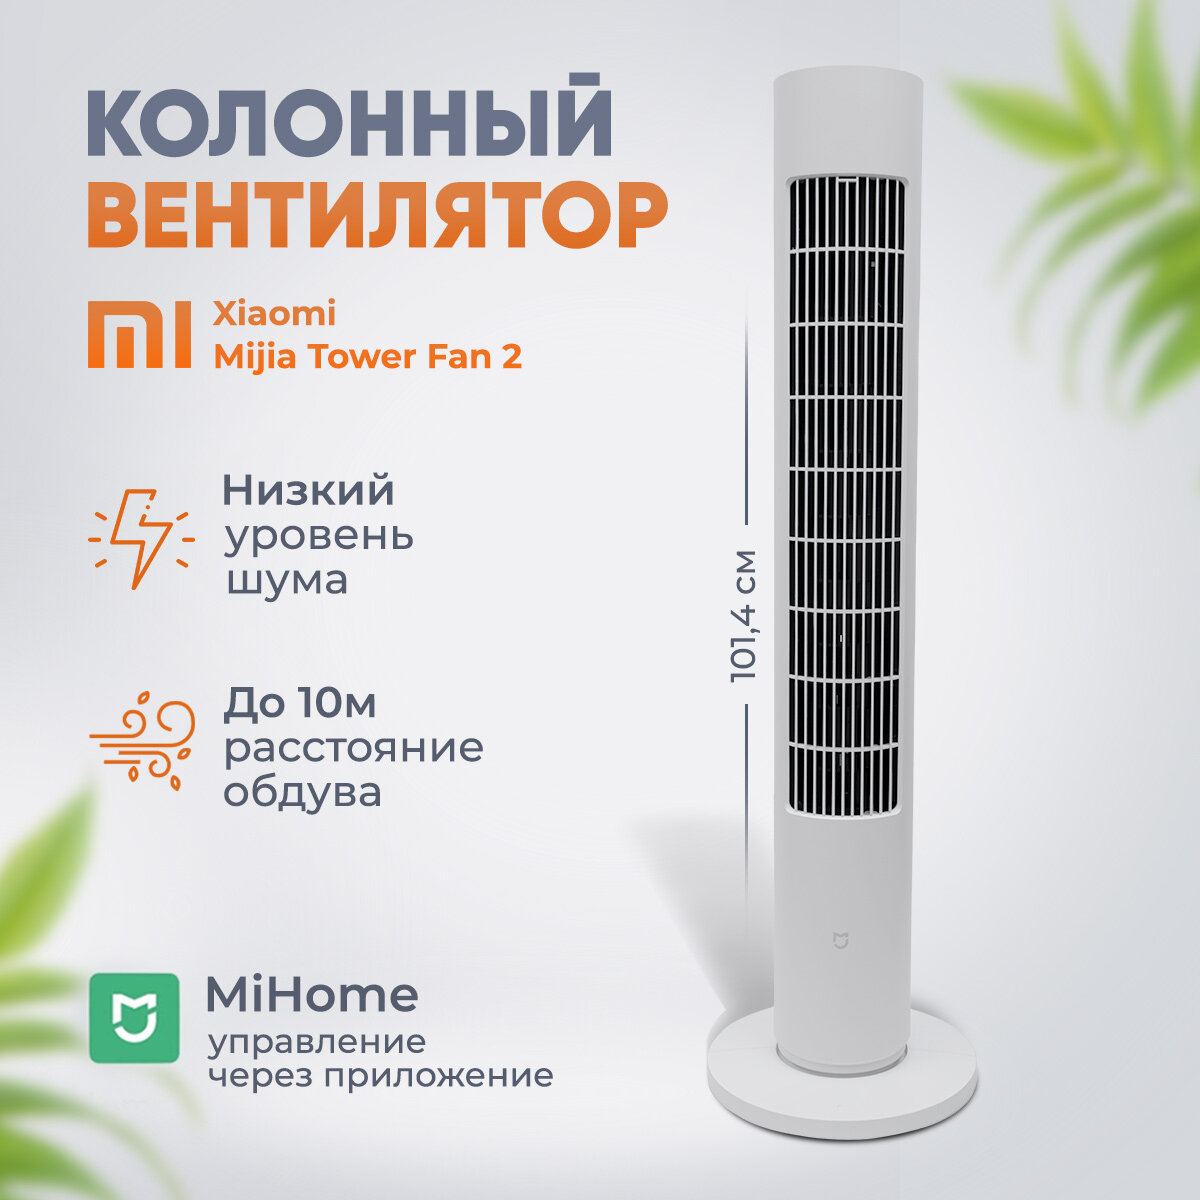 Напольный вентилятор Xiaomi Mijia DC Inverter Tower Fan 2 CN, белый (BPTS02DM)